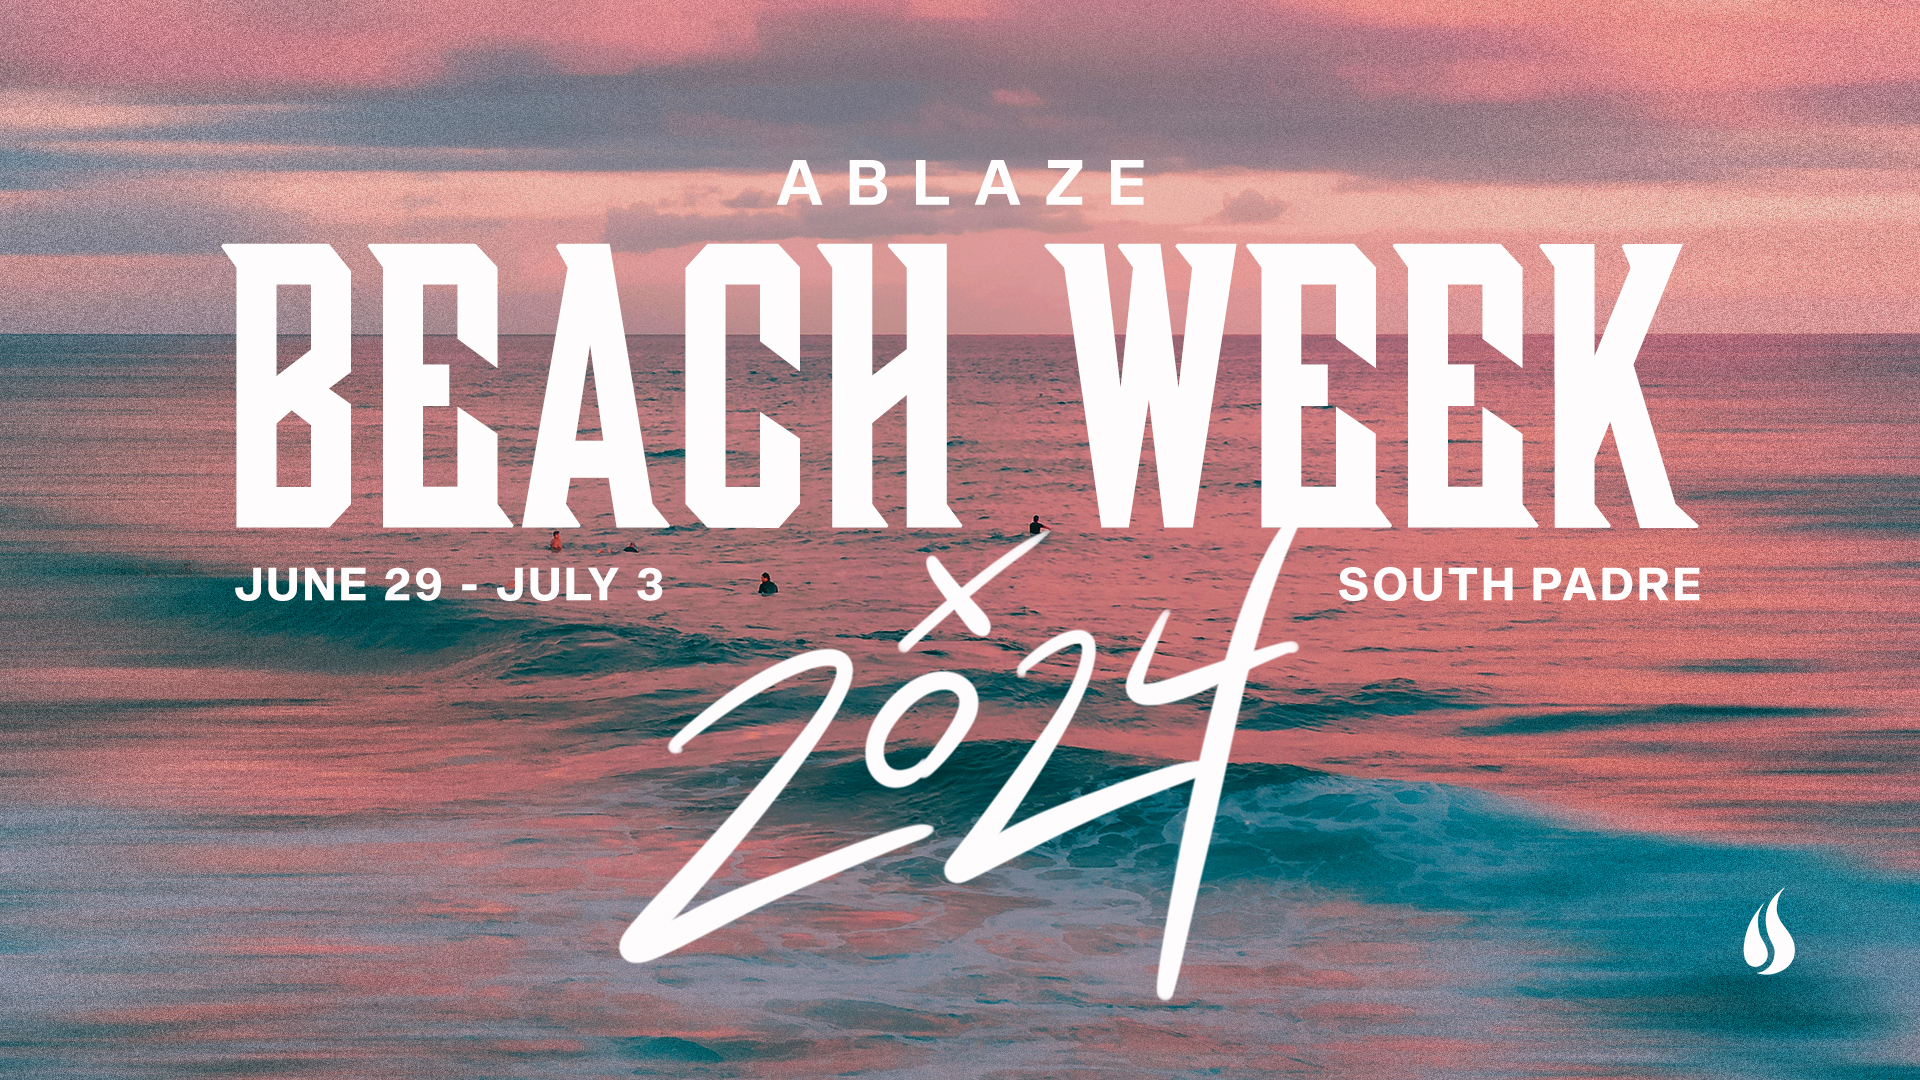 Ablaze Beach Week